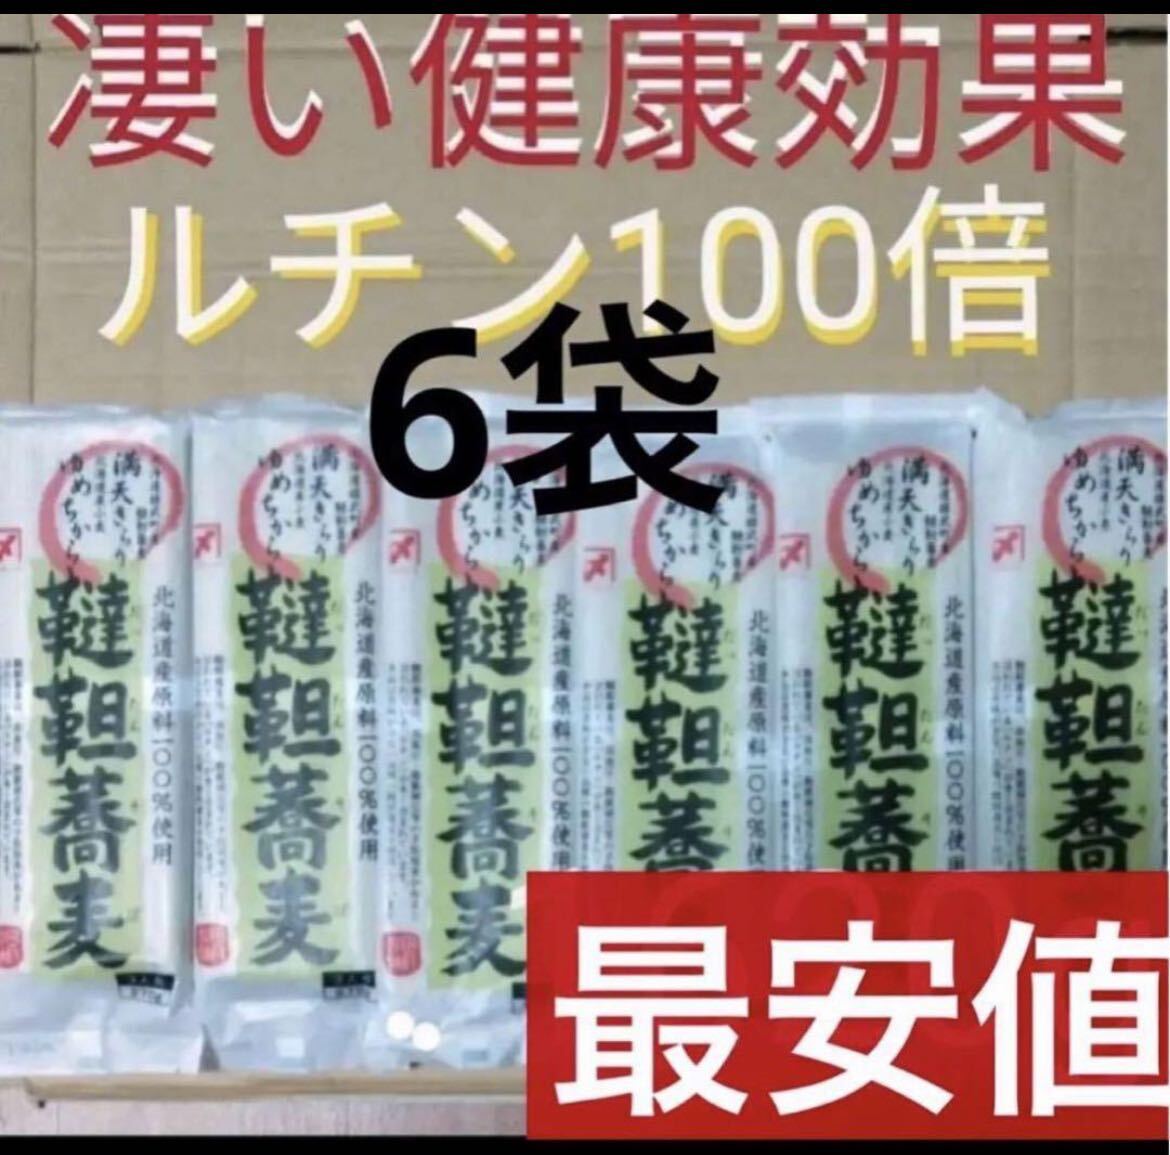  специальная цена Hokkaido сырье 100% тест хороший .. соба soba соба . лапша supplement Pro Tey здоровое питание диета 